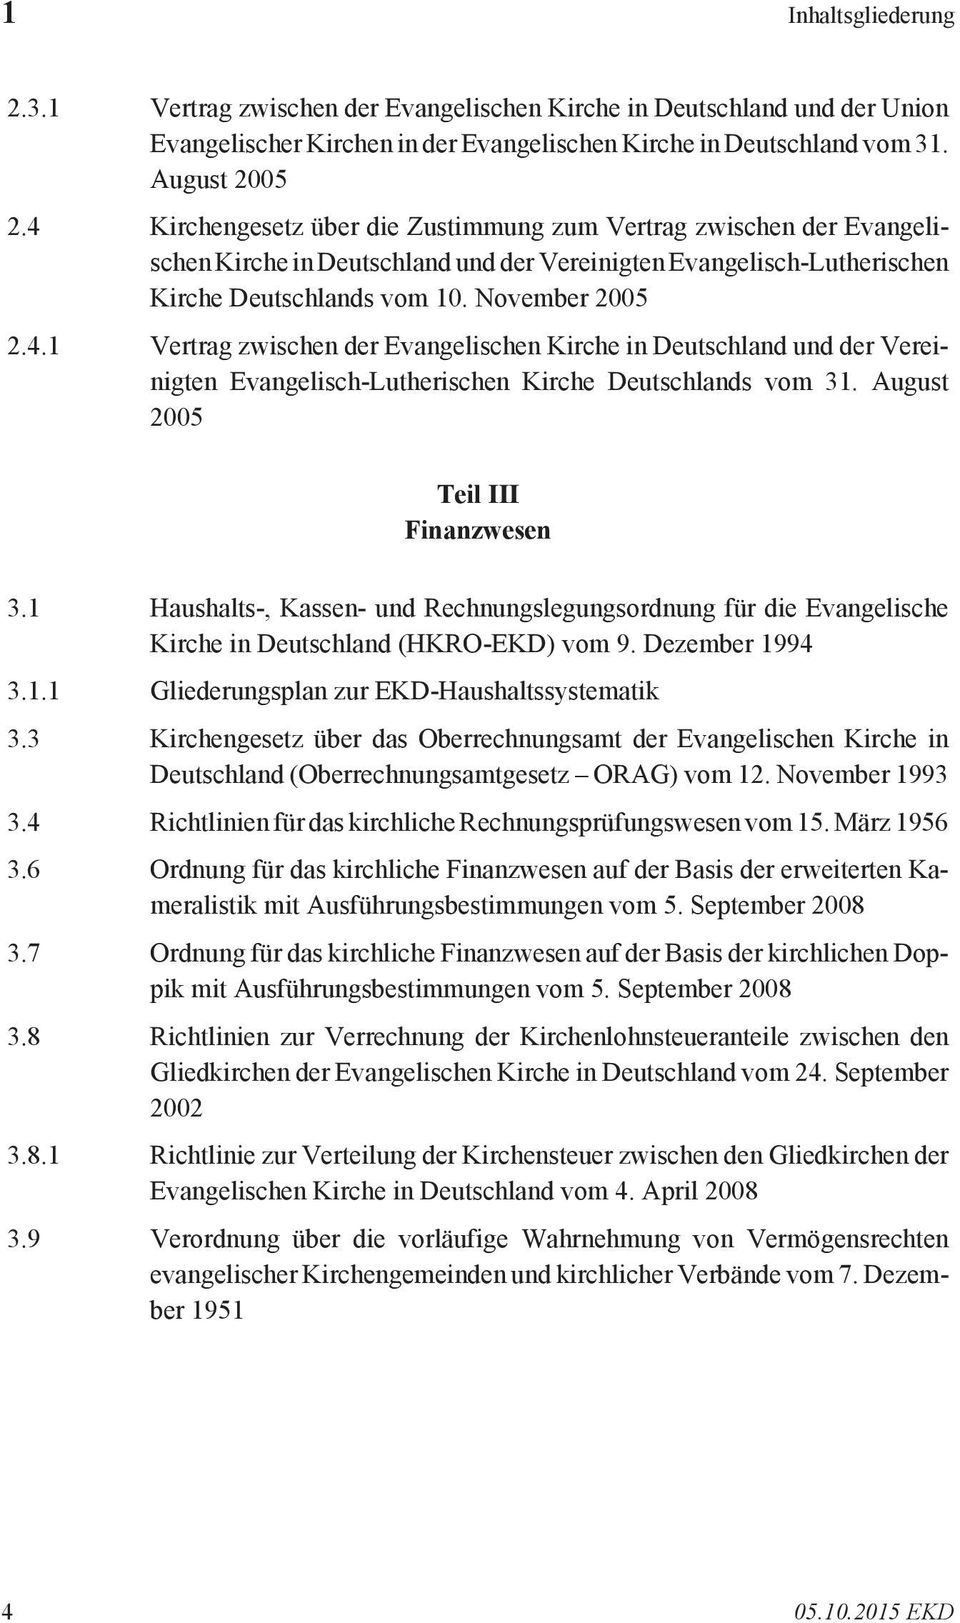 August 2005 Teil III Finanzwesen 3.1 Haushalts-, Kassen- und Rechnungslegungsordnung für die Evangelische Kirche in Deutschland (HKRO-EKD) vom 9. Dezember 1994 3.1.1 Gliederungsplan zur EKD-Haushaltssystematik 3.